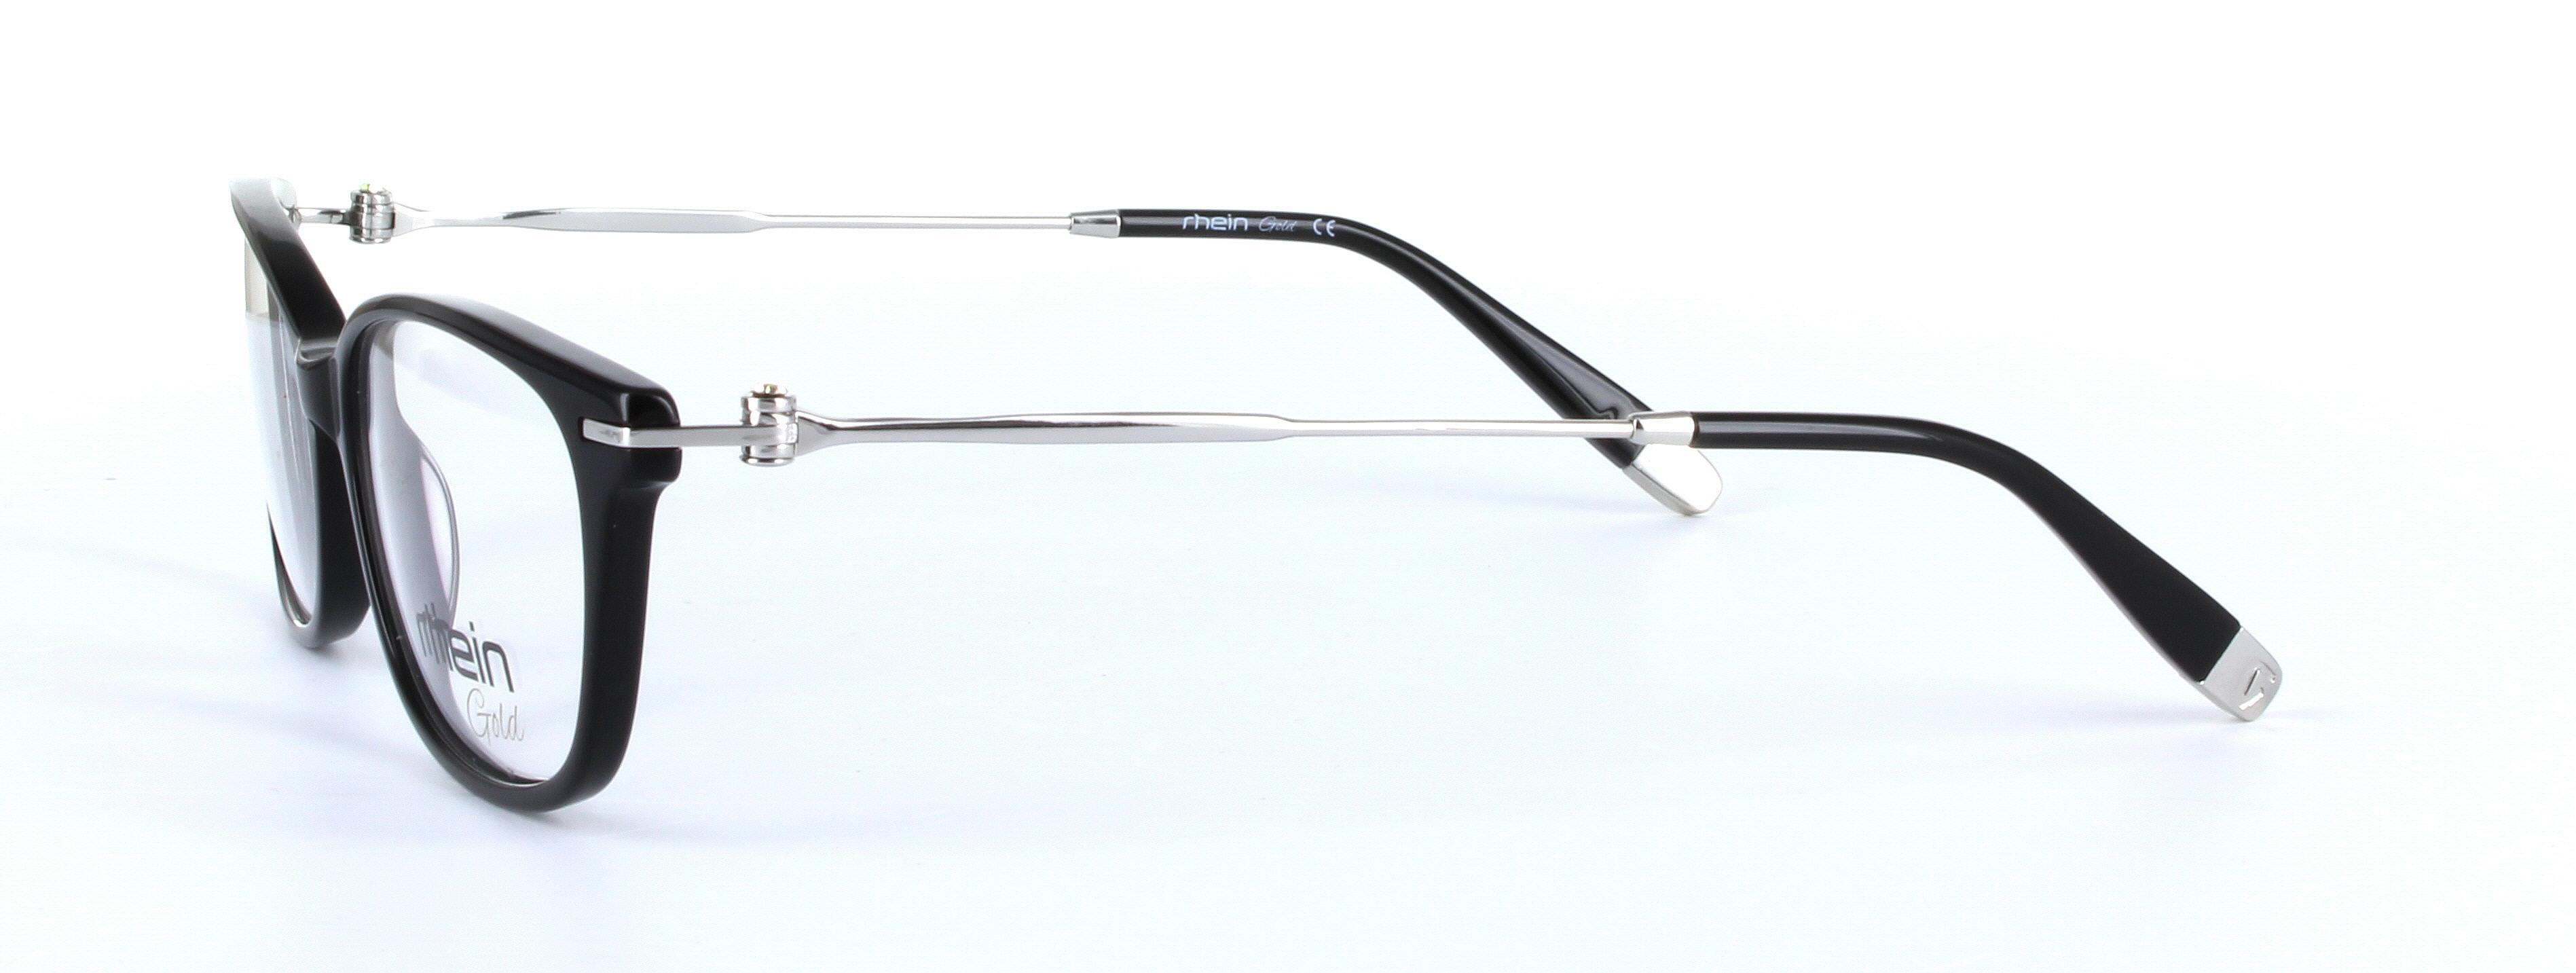 Locarno Black Full Rim Oval Plastic Glasses - Image View 2